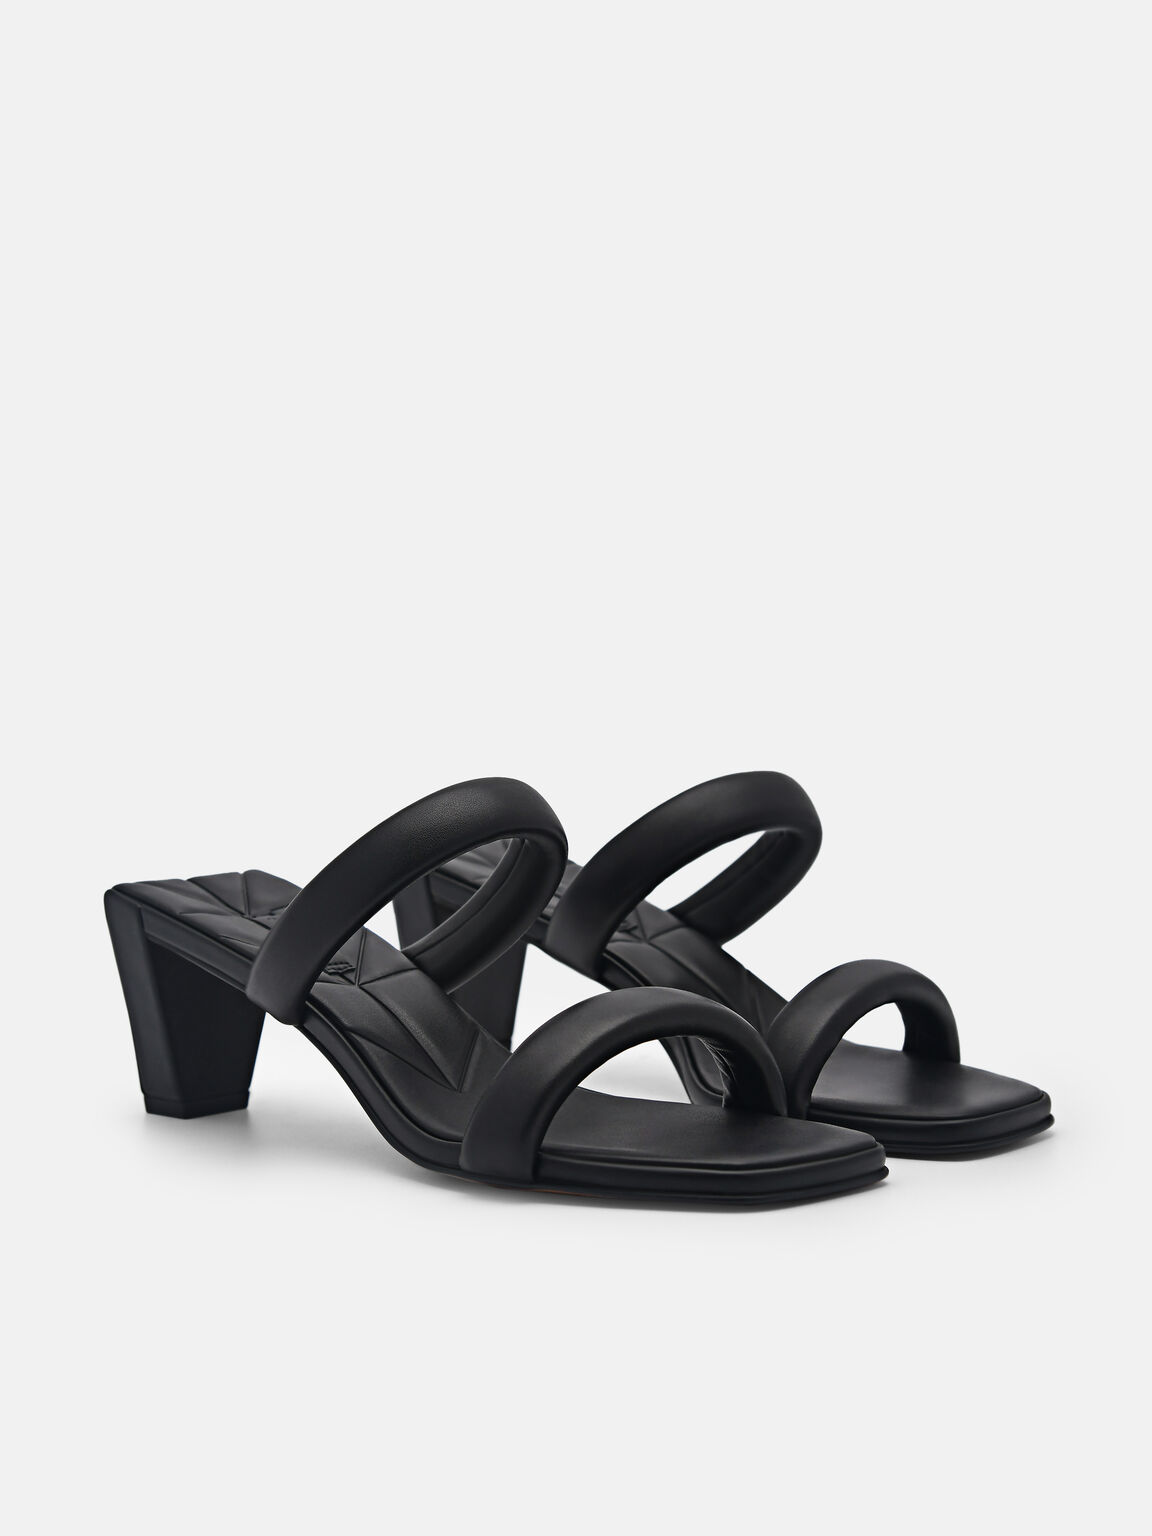 Aster Heel Sandals, Black